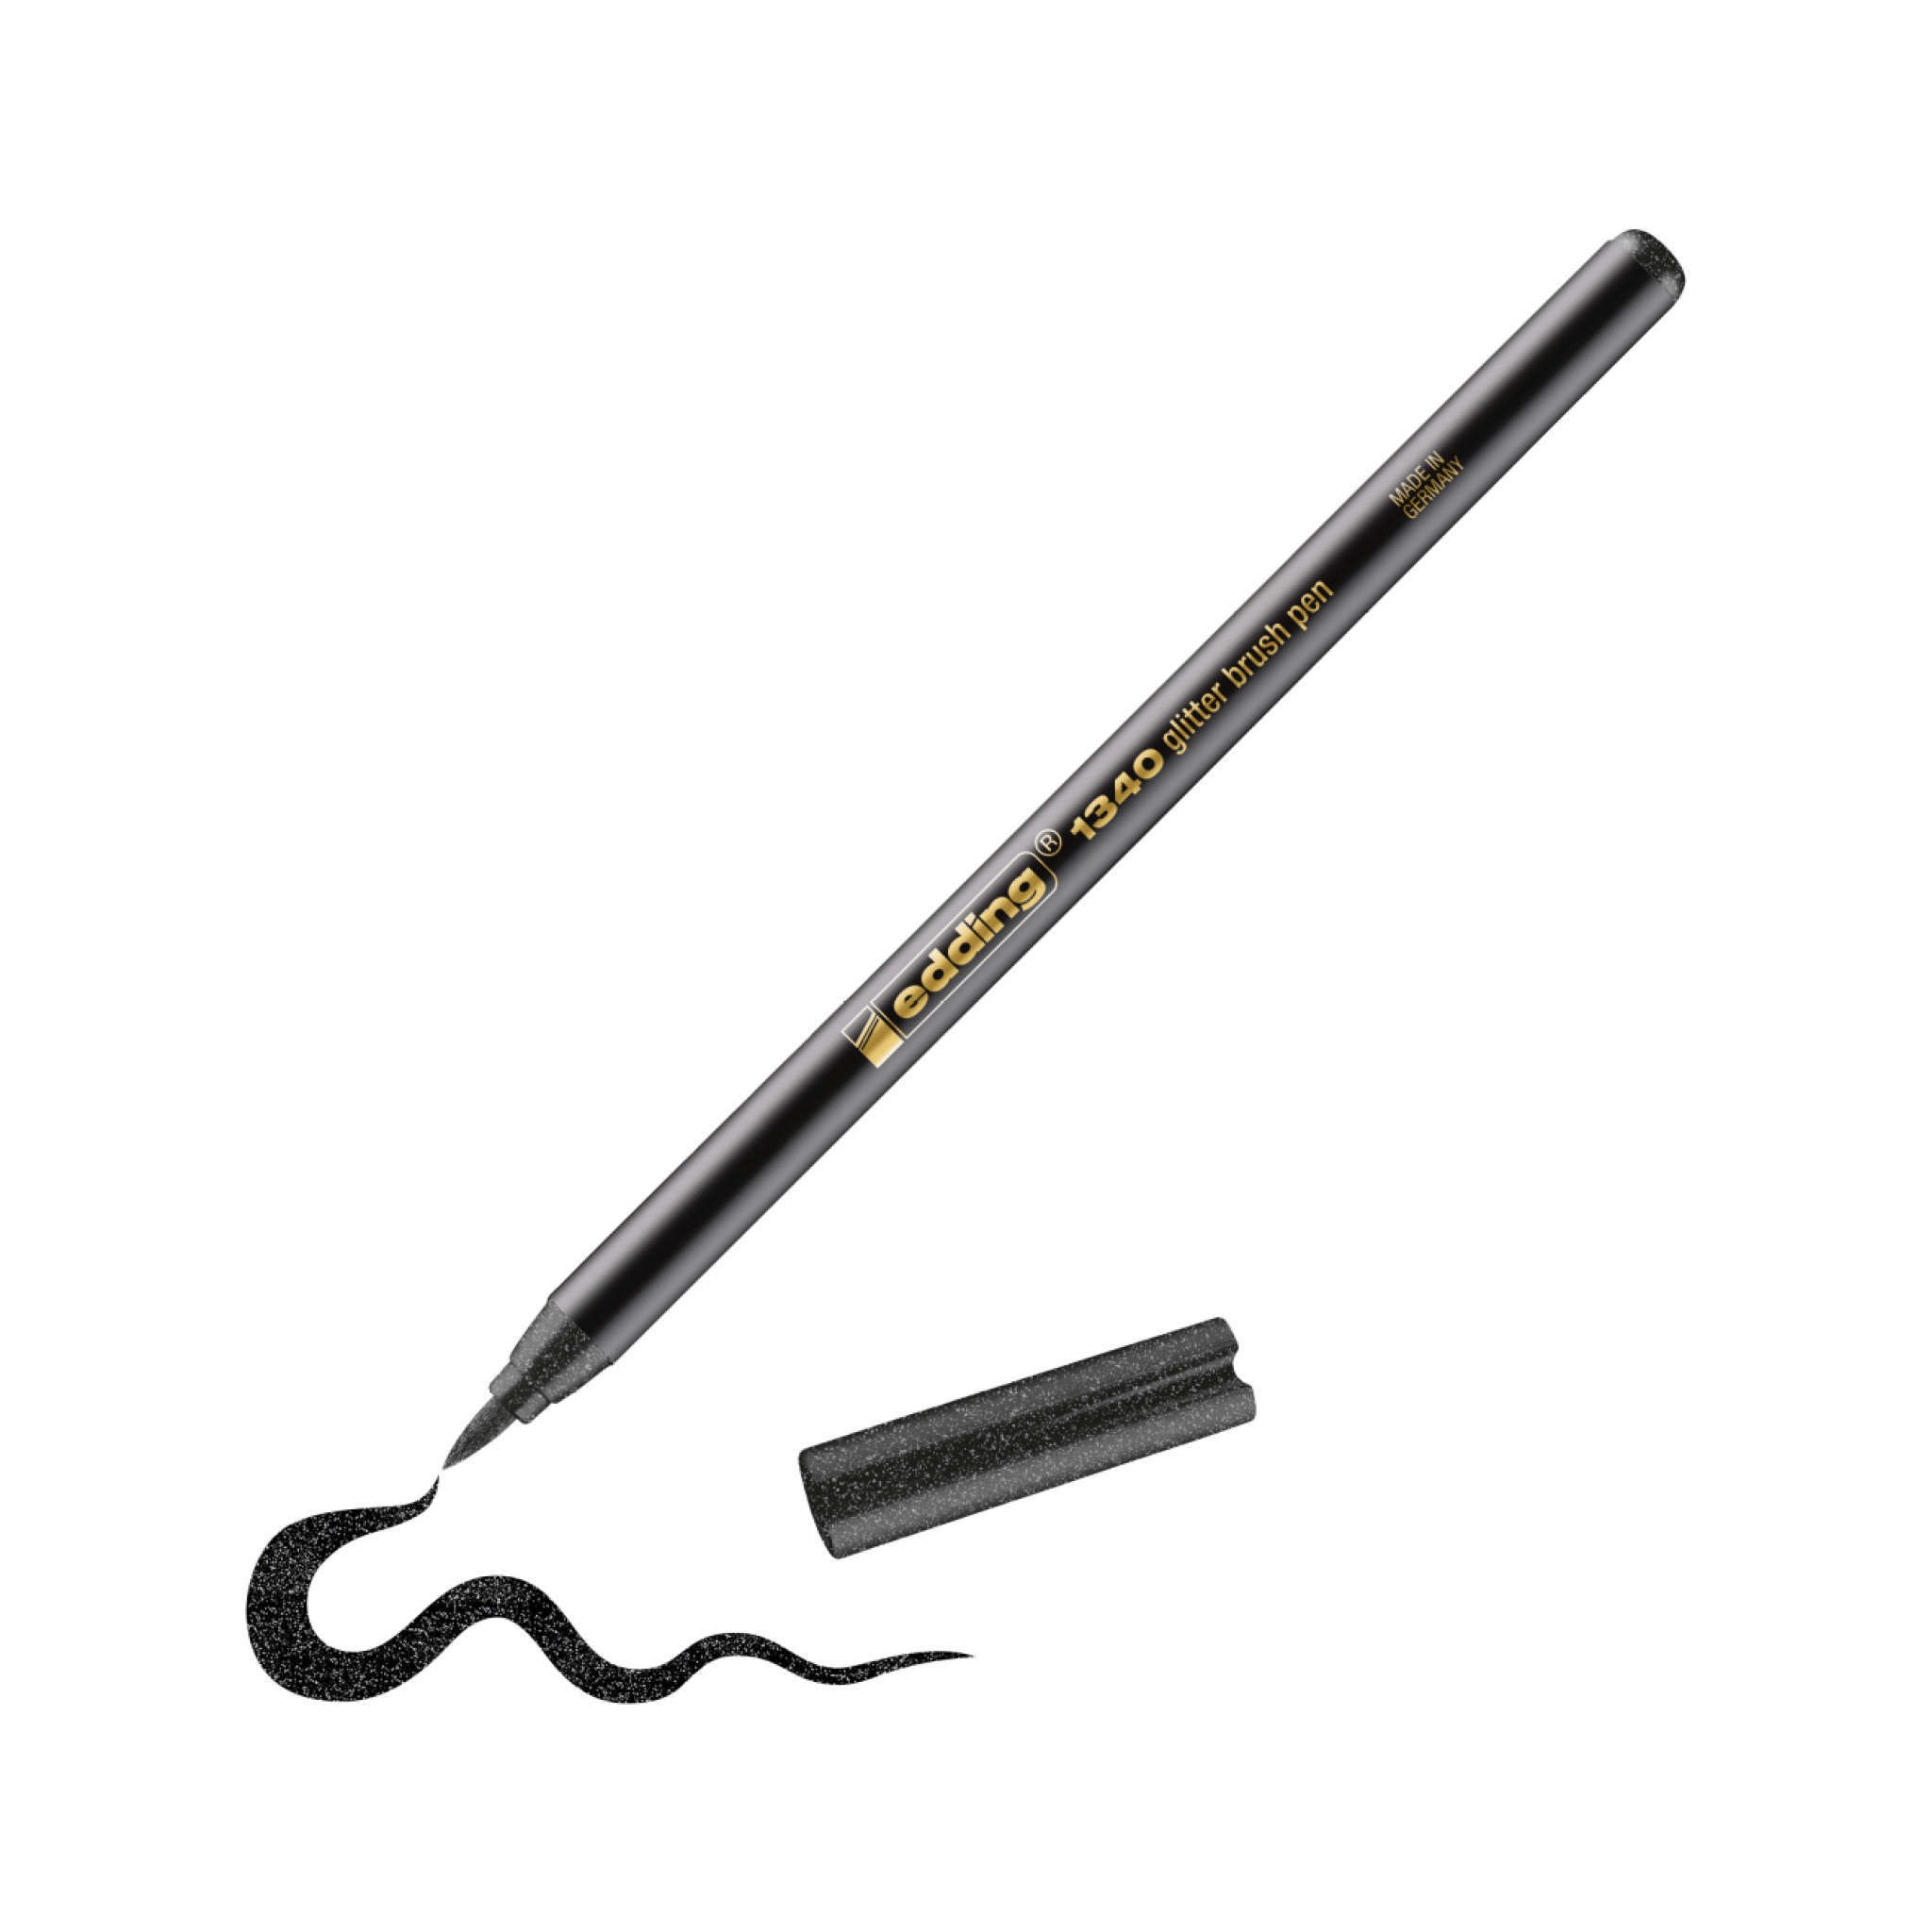 Ein schwarzer Glitzer-Pinselstift edding 1340 mit abgenommener Kappe, der eine Wellenlinie auf weißem Untergrund zeichnet. Der Stift trägt die Aufschrift „Precision 2.0 Graphic Liner for Handlettering“.